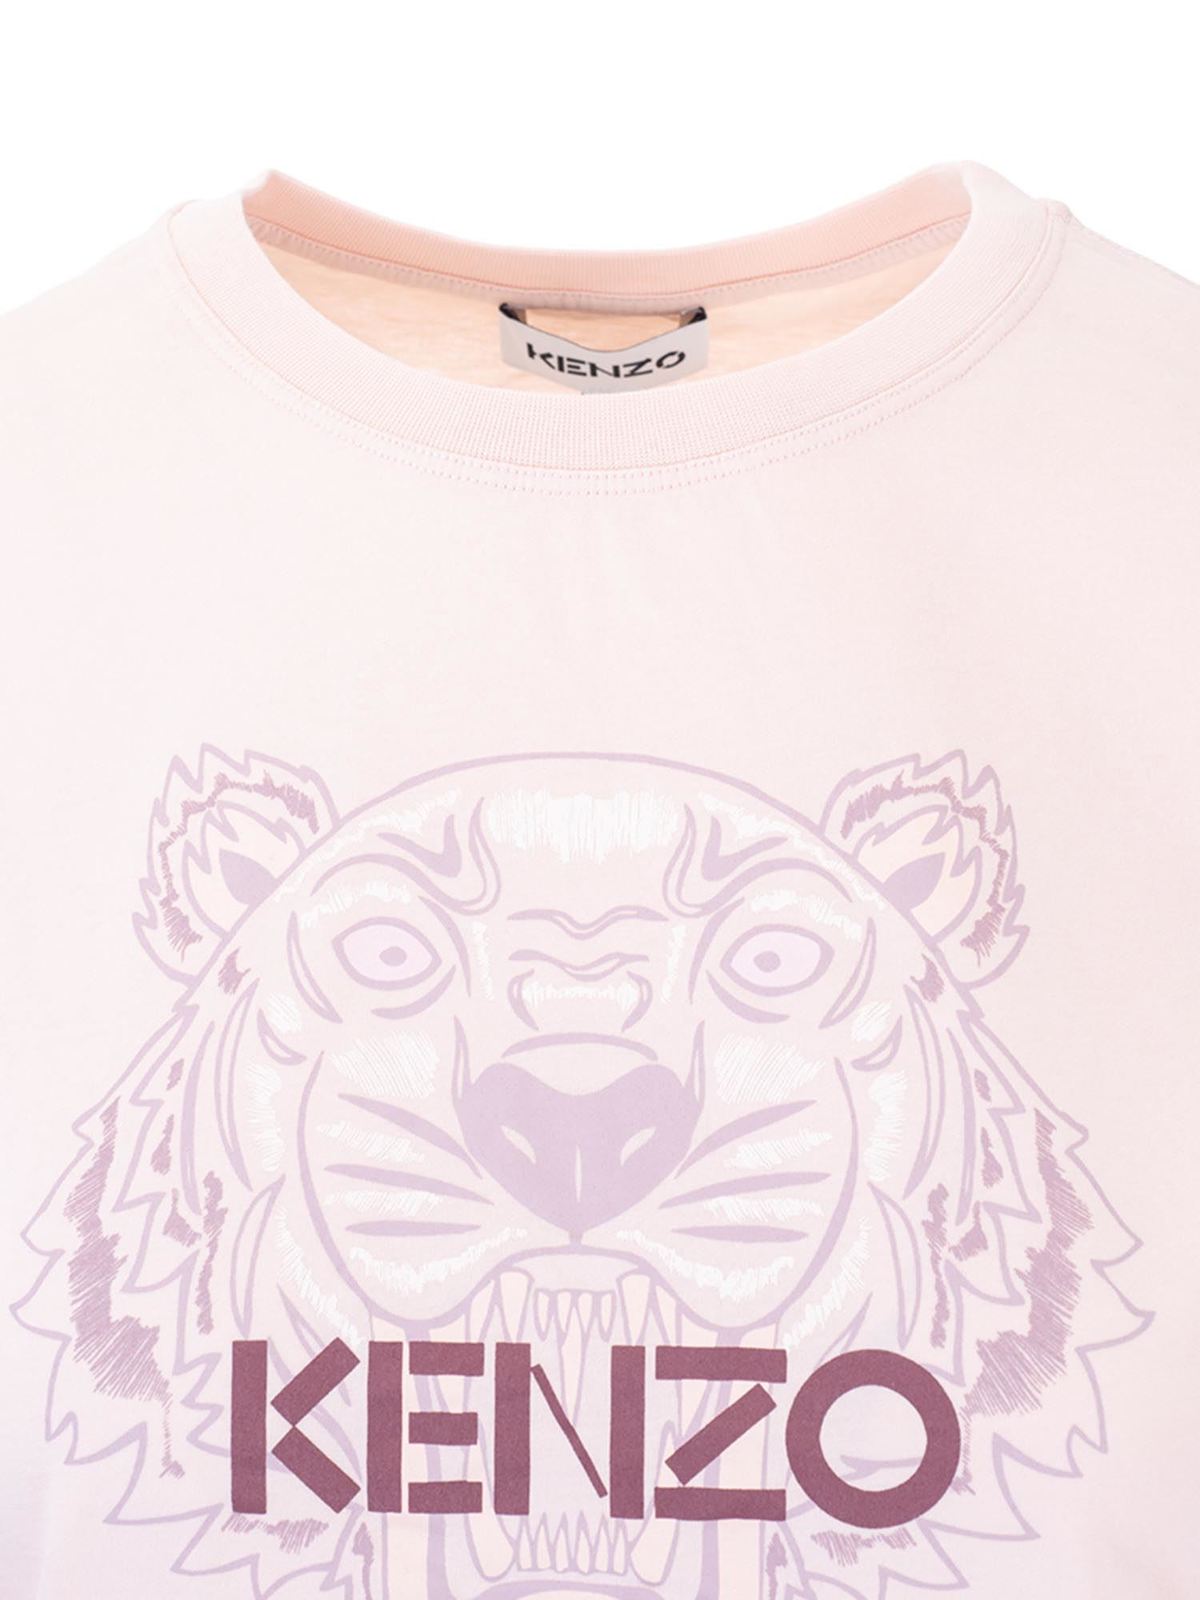 kenzo pink tiger t shirt